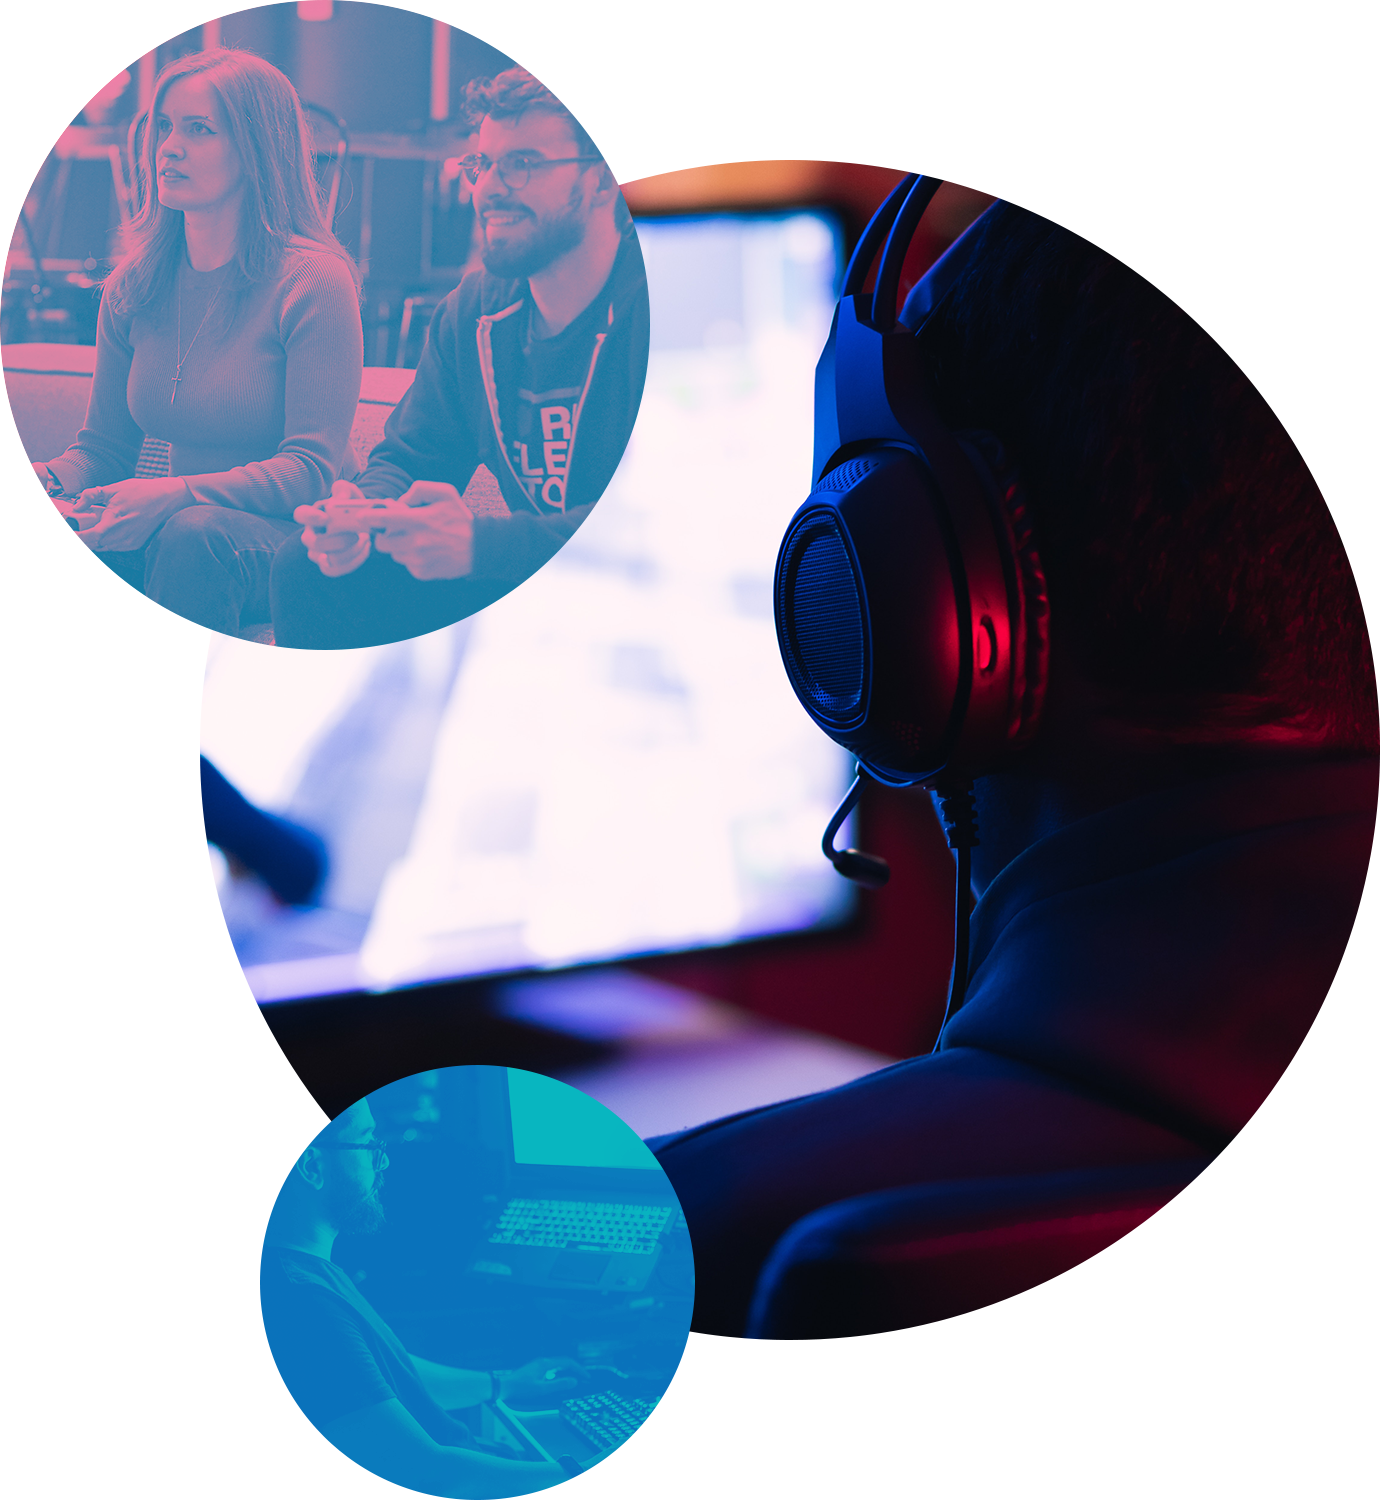 Employé.e.s de Reflector jouent à des jeux vidéo pendant que deux développeurs de jeux vidéo travaillent sur leurs ordinateurs